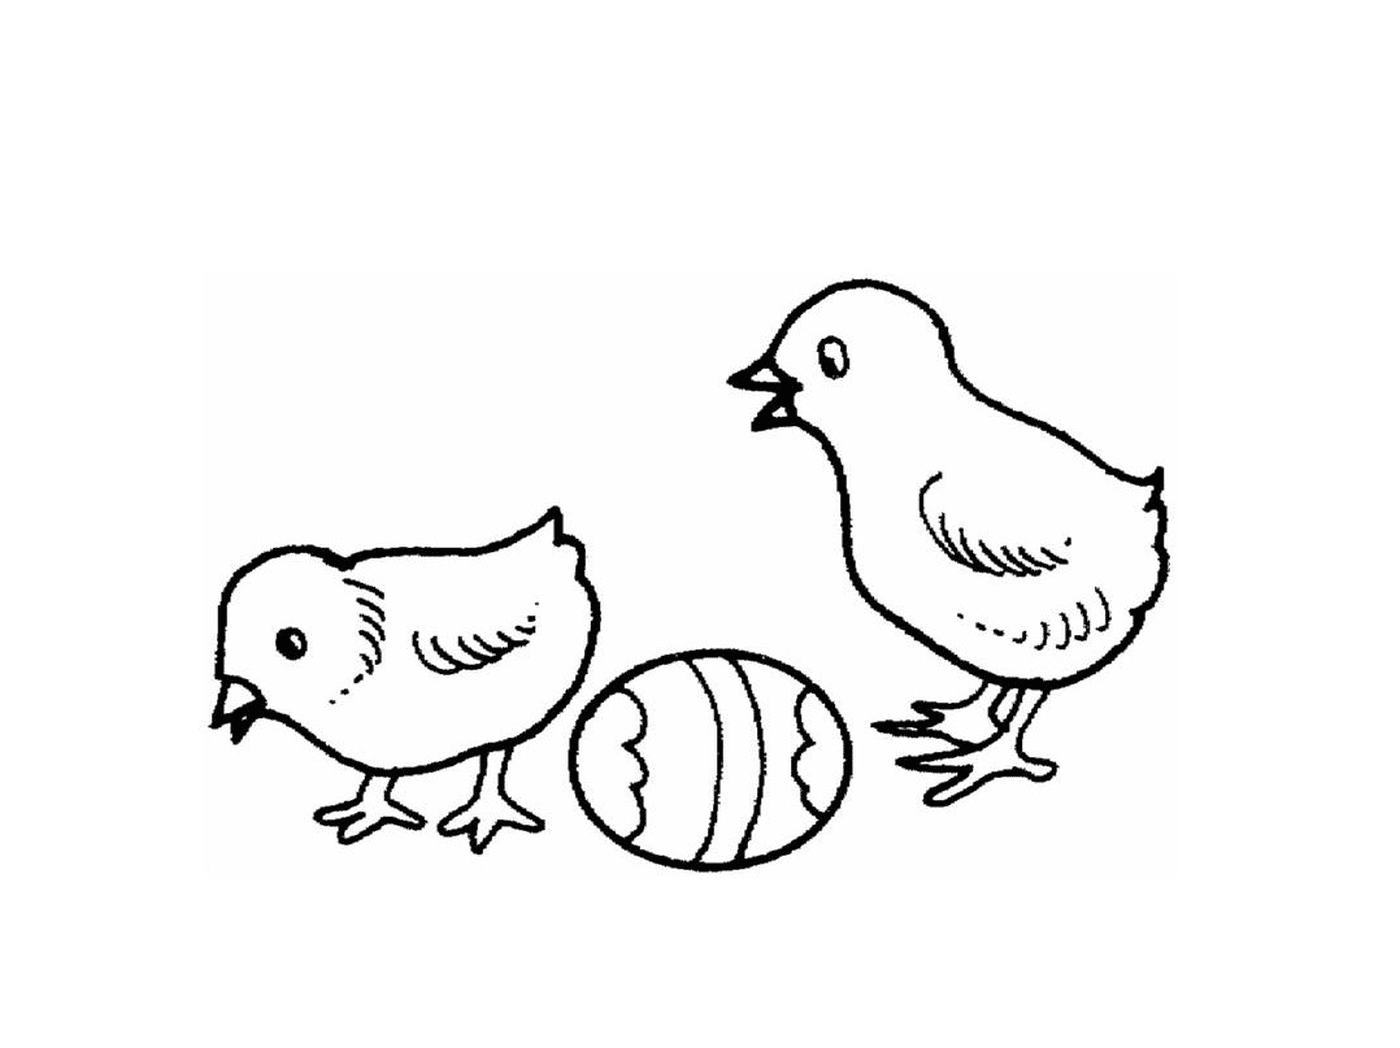  Duas galinhas e um ovo ficam lado a lado 